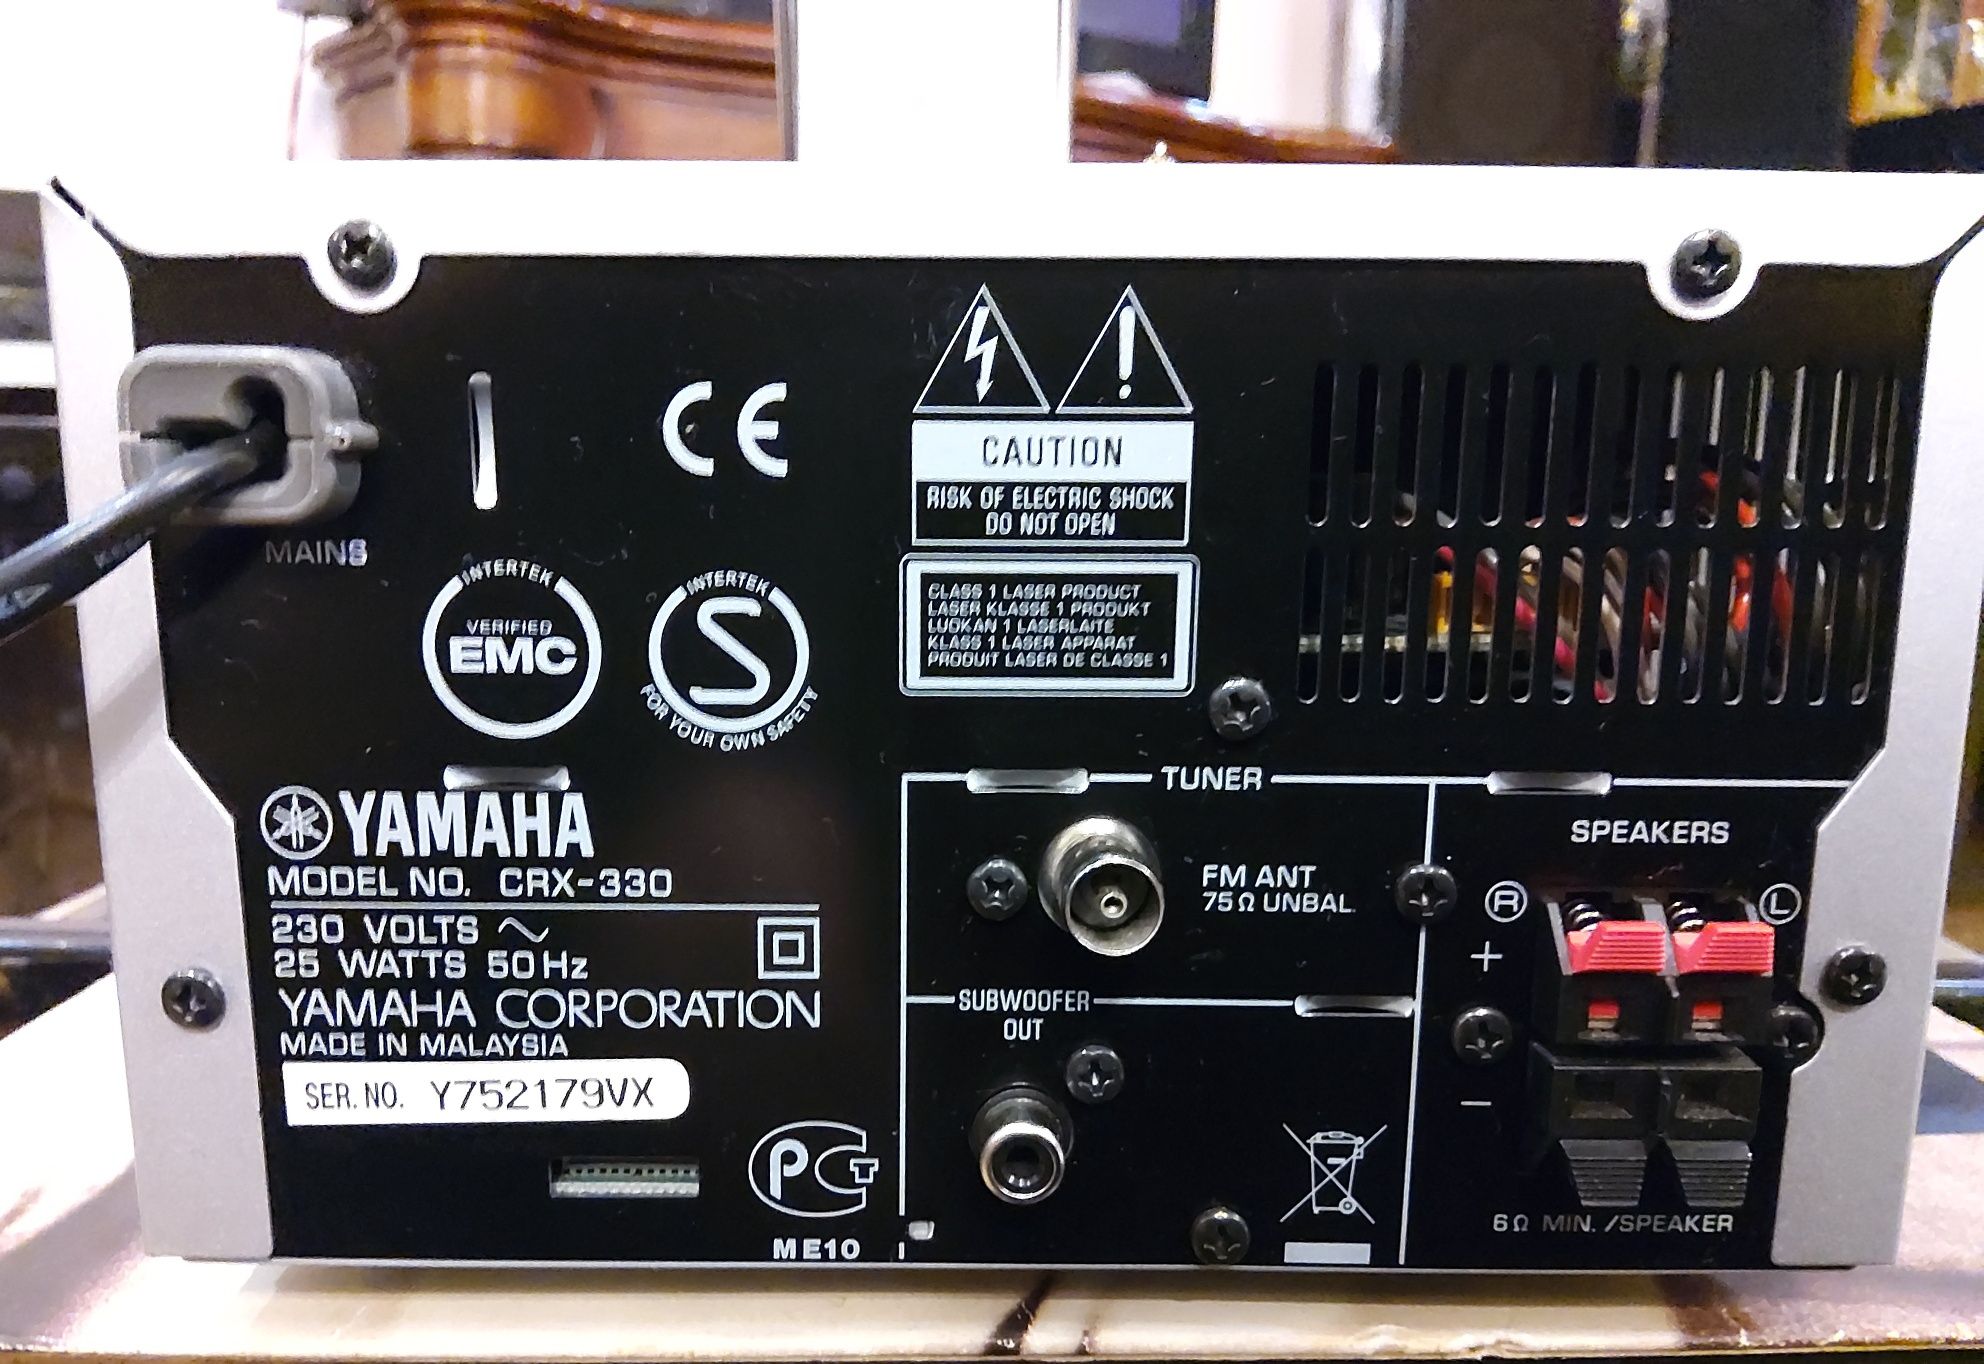 YAMAHA усилитель,FM, CD проигрыватель,док-станция для  ipod или  USB ф